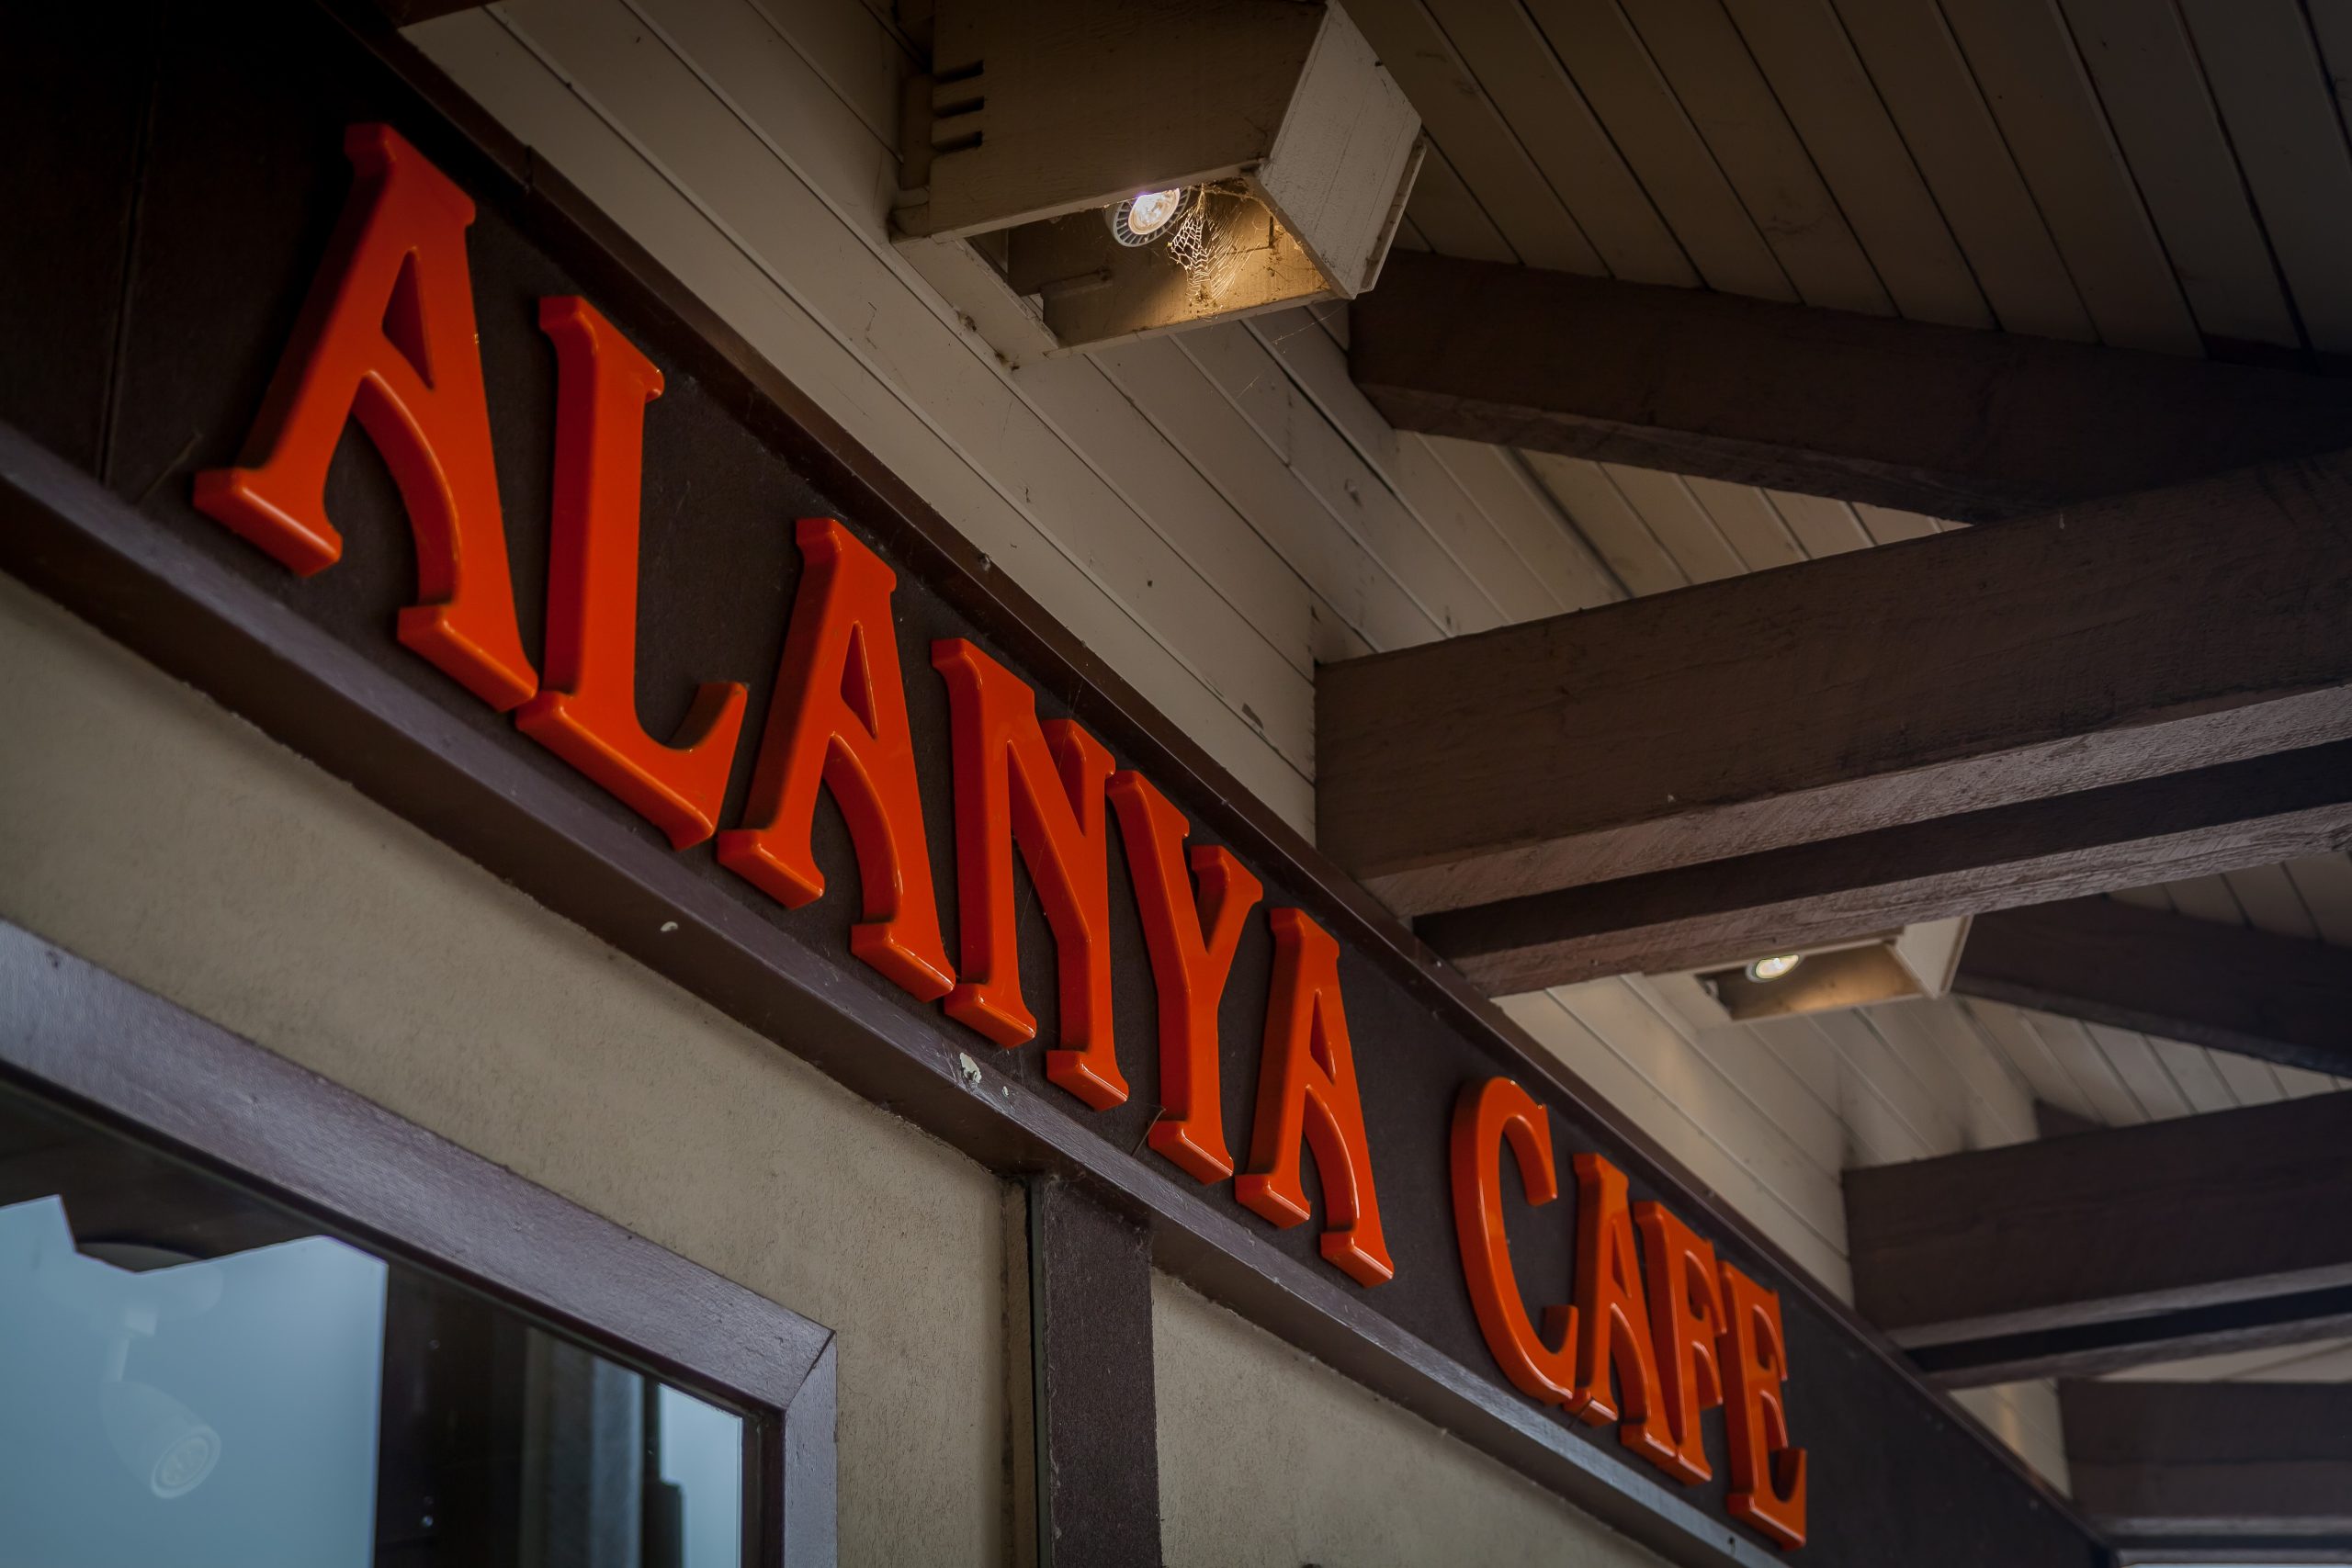 Alanya Cafe